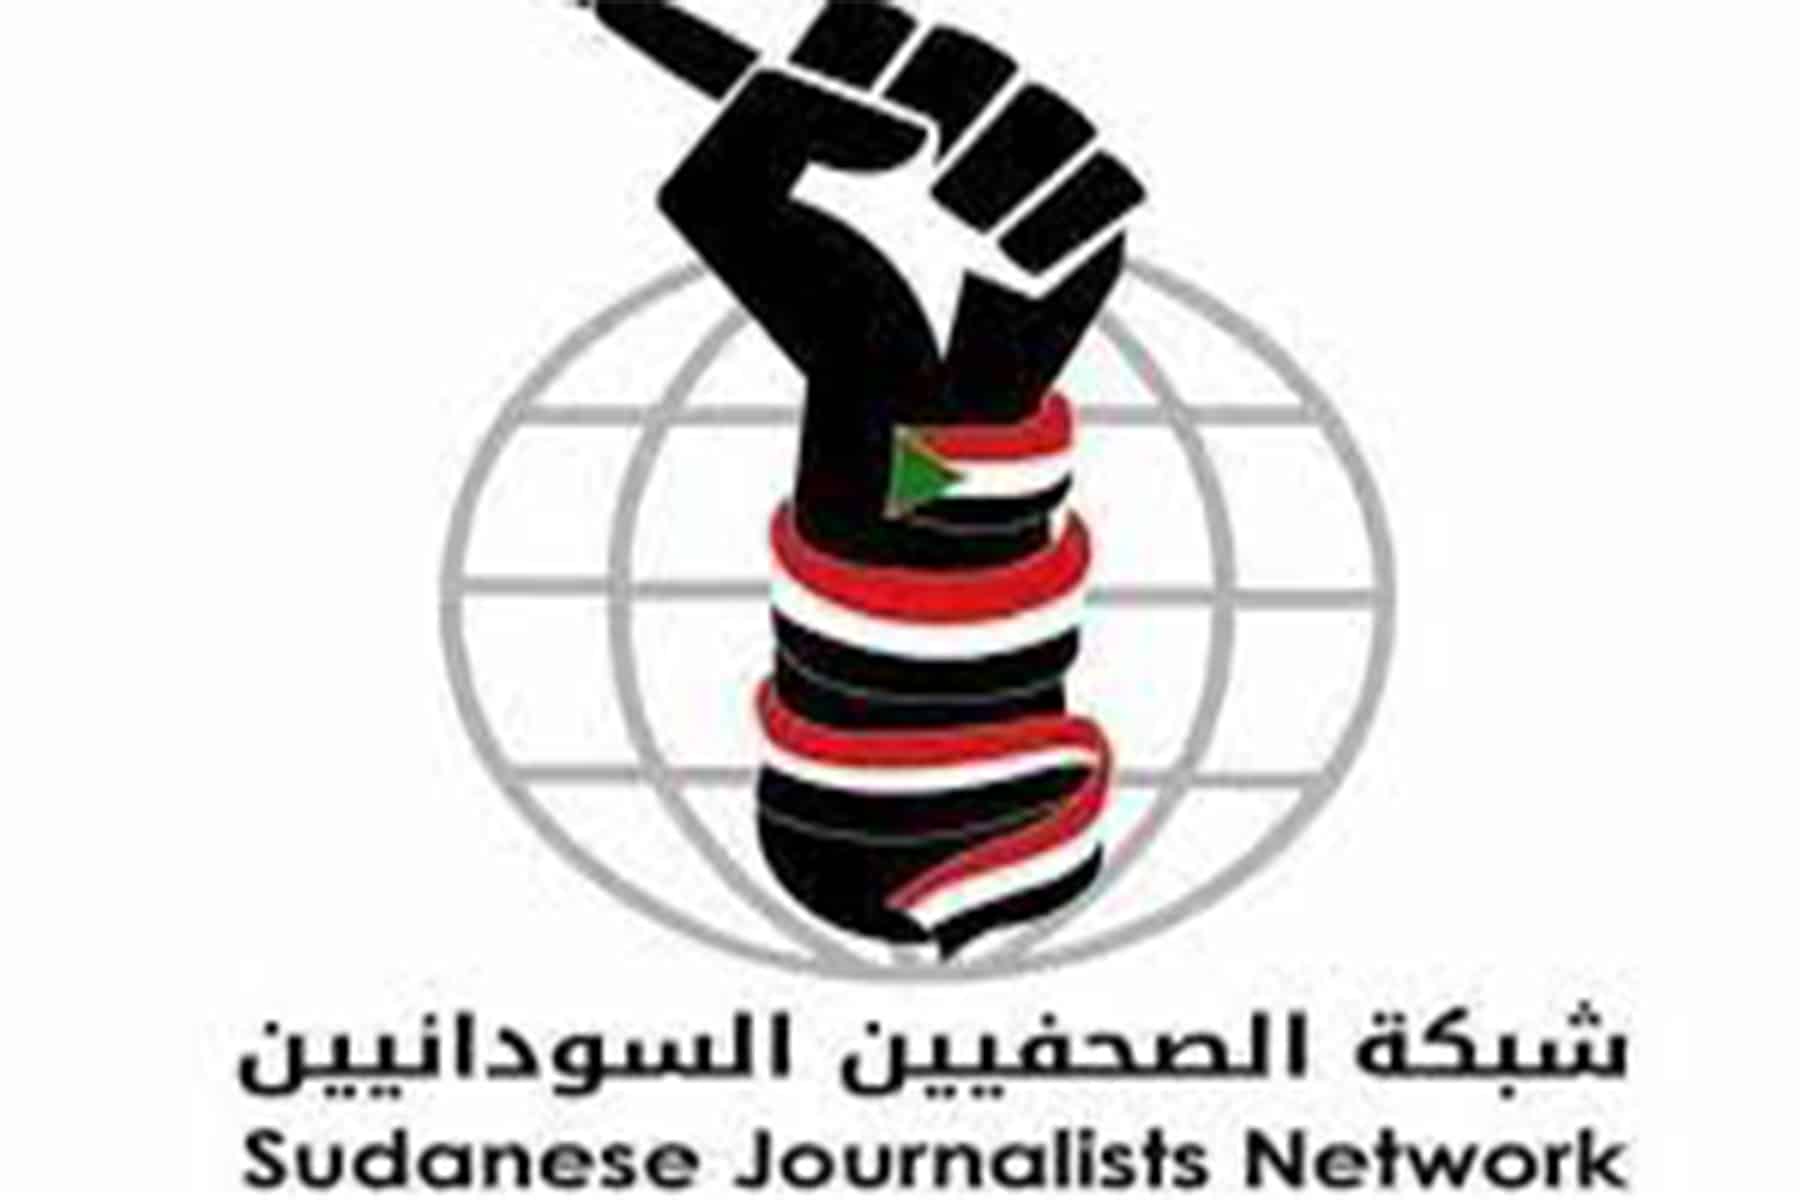 شبكة الصحفيين السودانيين watanserb.com